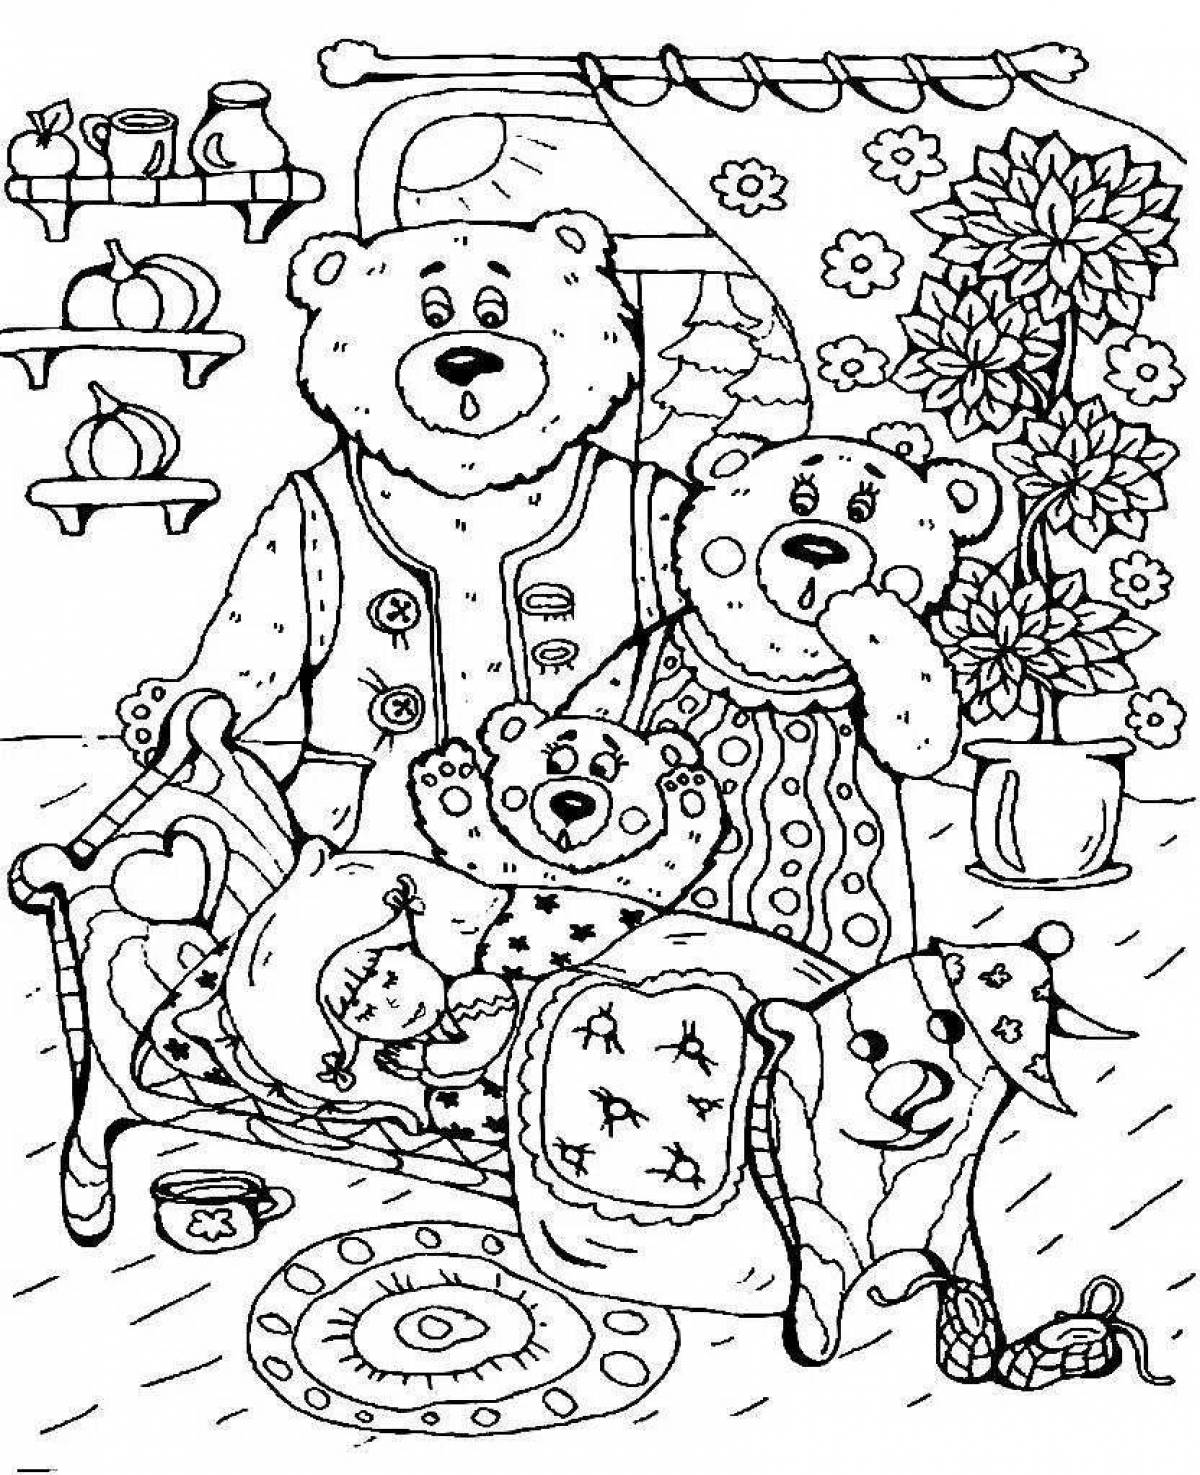 Three shining bears and masha coloring book